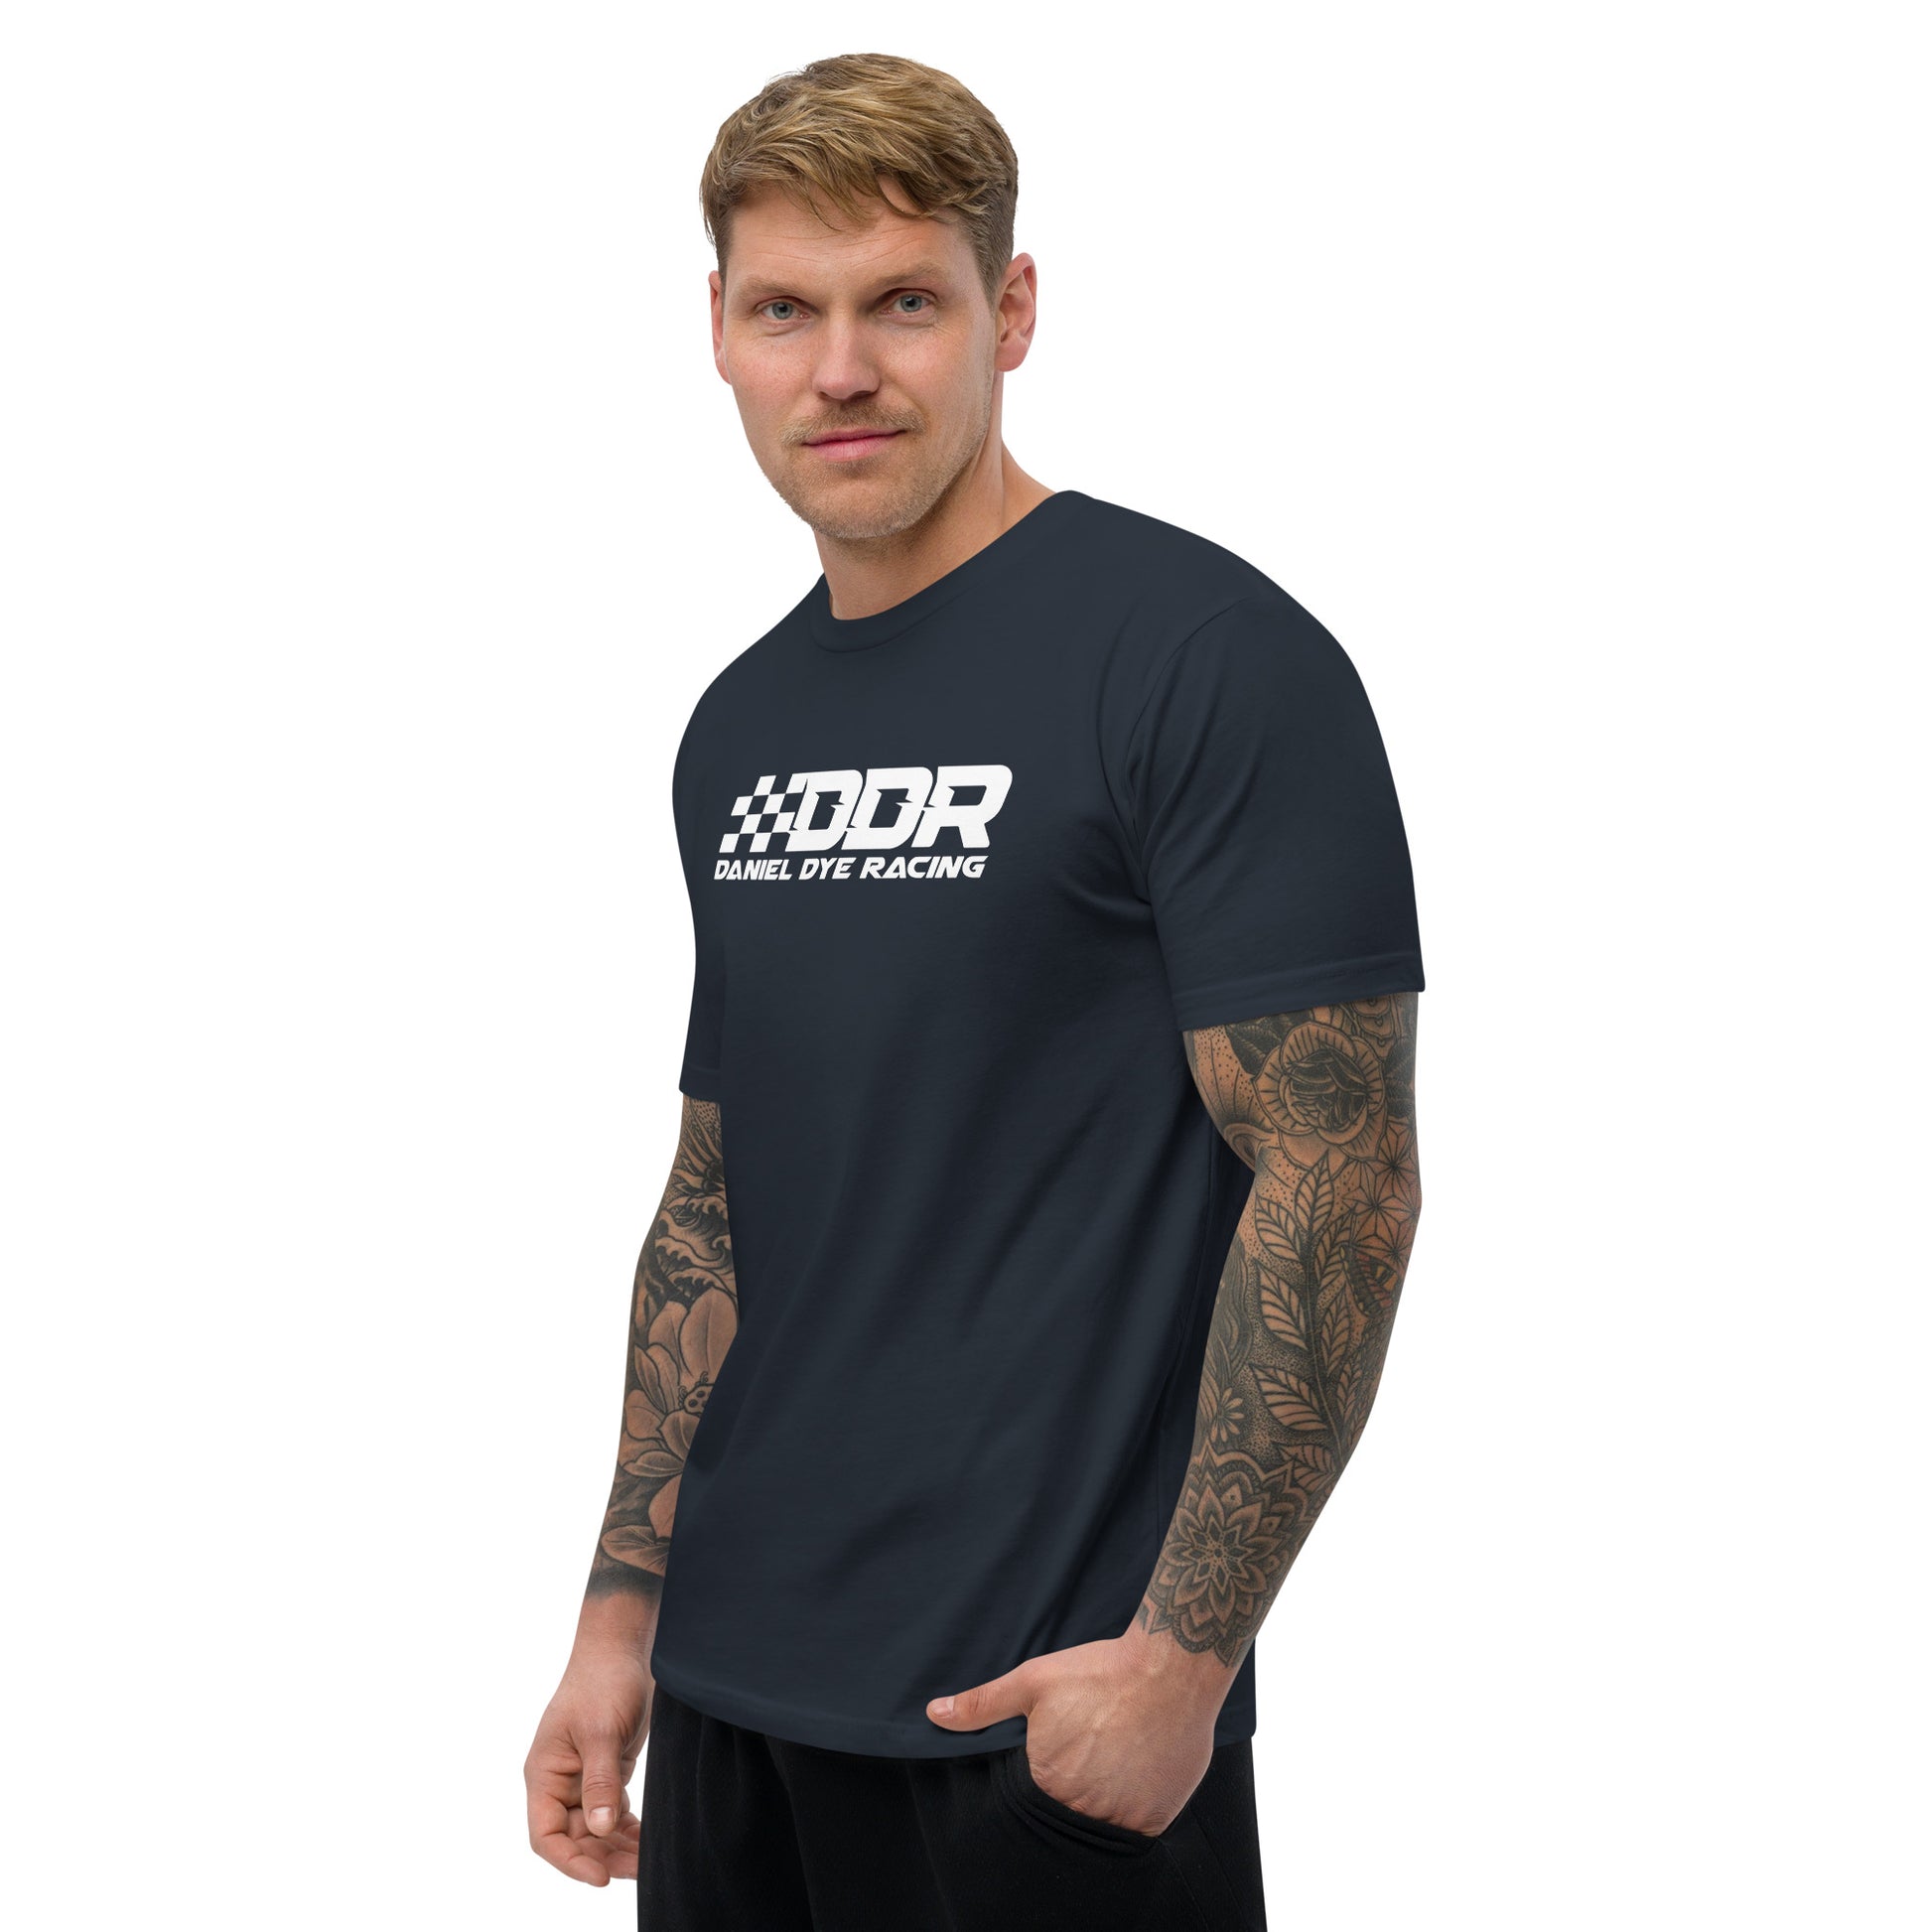 Short Sleeve T-shirt - [Daniel Dye Racing Shop]